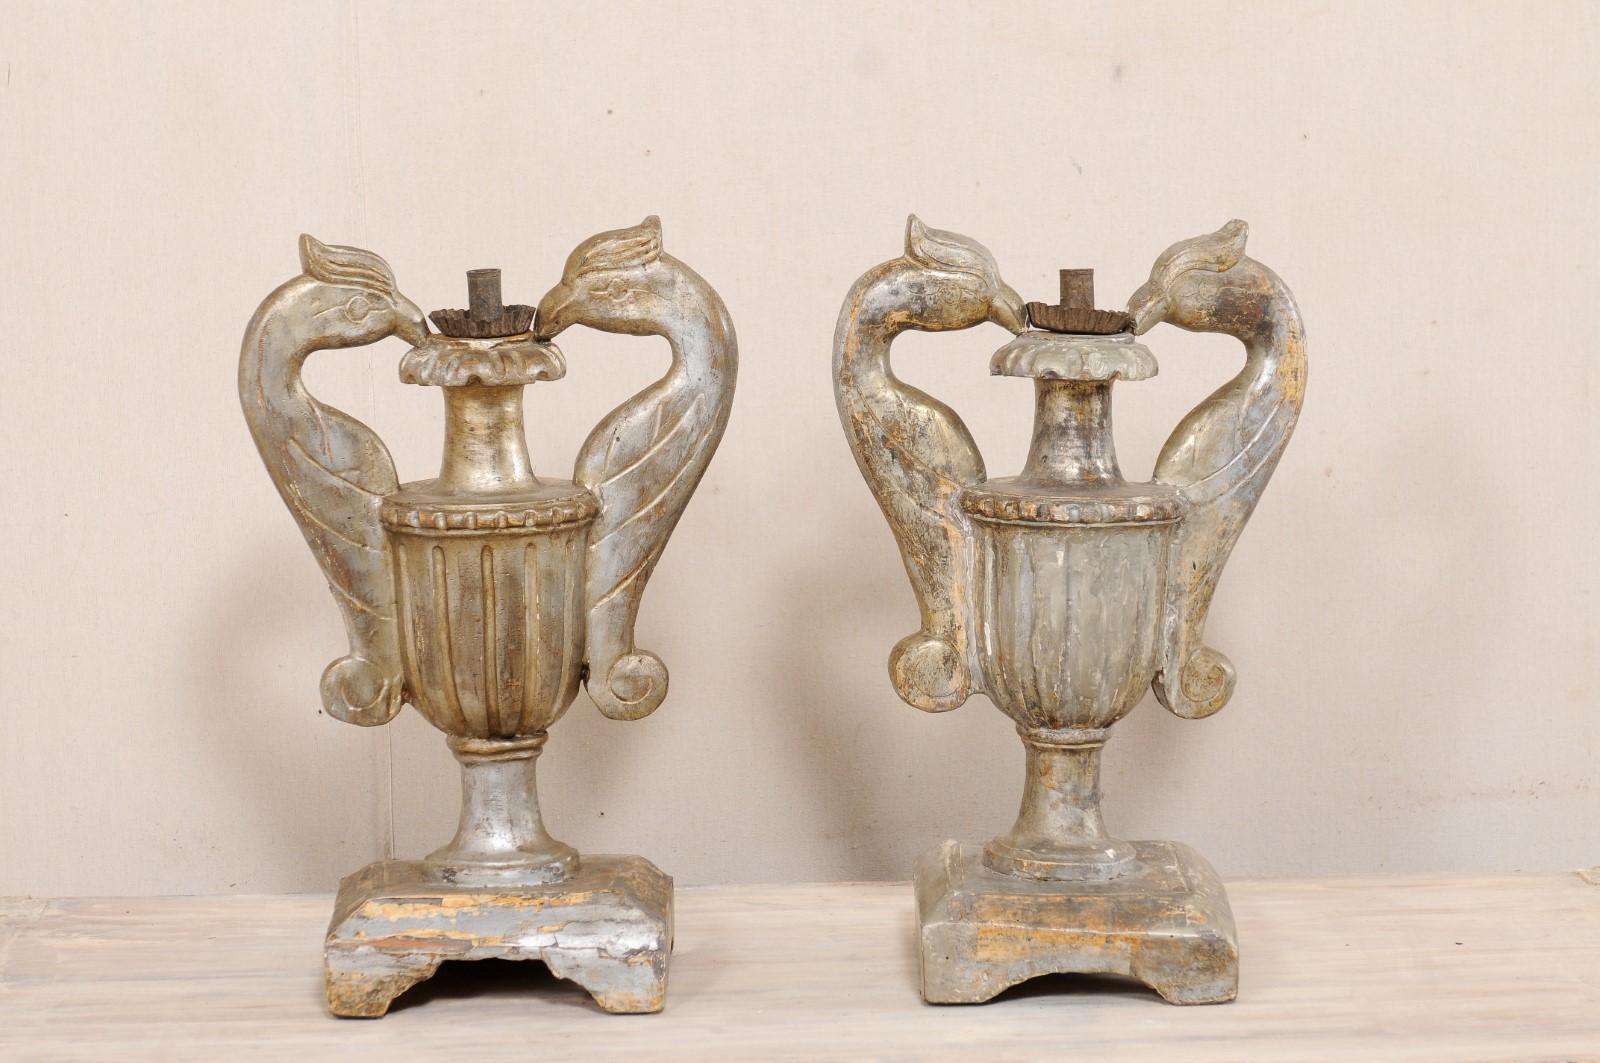 Paire d'urnes italiennes en bois sculpté, avec un seul bougeoir, à motif d'oiseaux, du 19e siècle. Ces porte-bougies anciens d'Italie présentent chacun une urne sculptée en trois dimensions, avec des cannelures et deux poignées en forme d'oiseau de